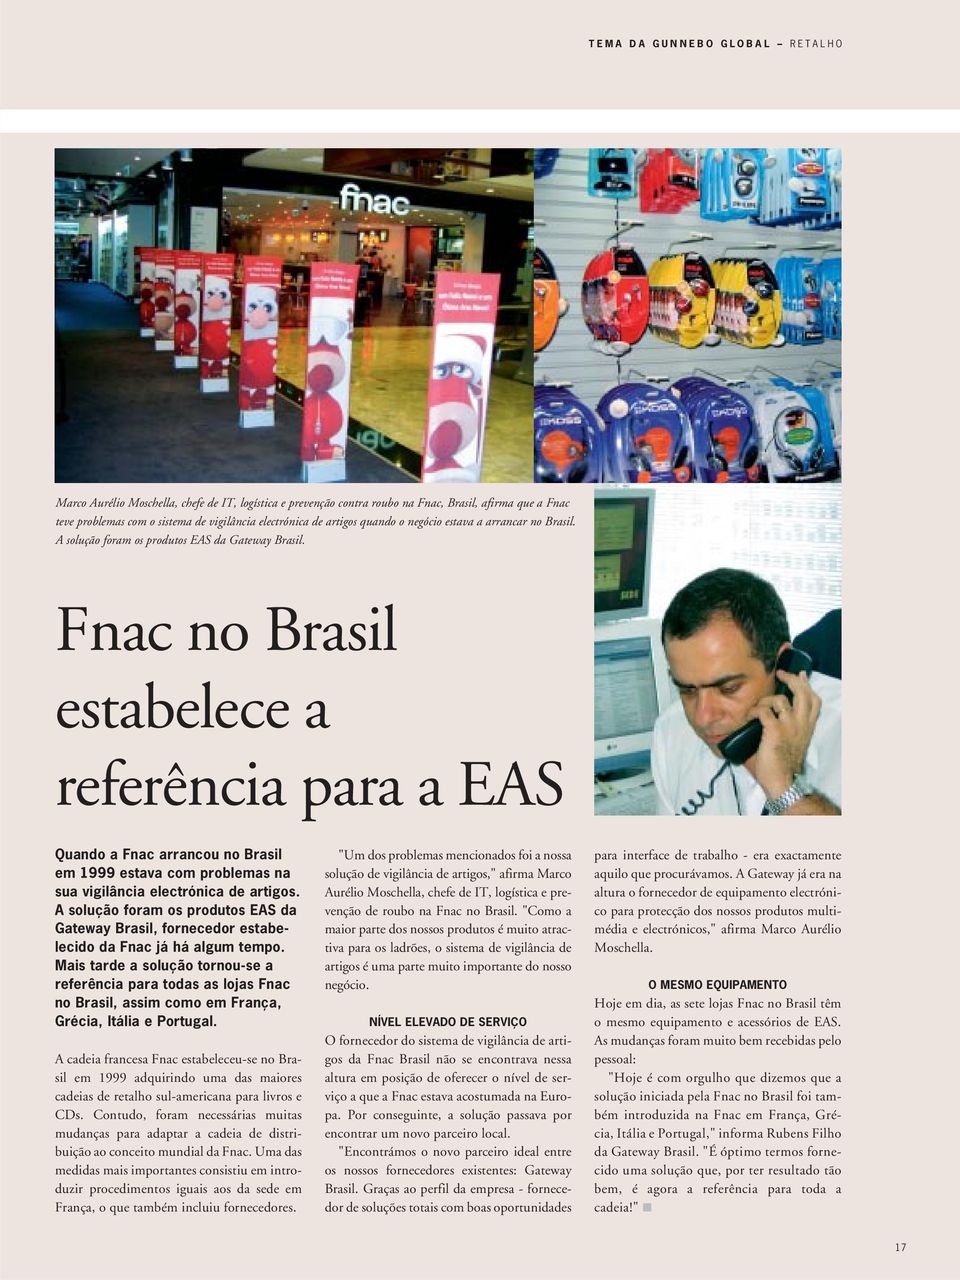 Fnac no Brasil estabelece a referência para a EAS Quando a Fnac arrancou no Brasil em 1999 estava com problemas na sua vigilância electrónica de artigos.